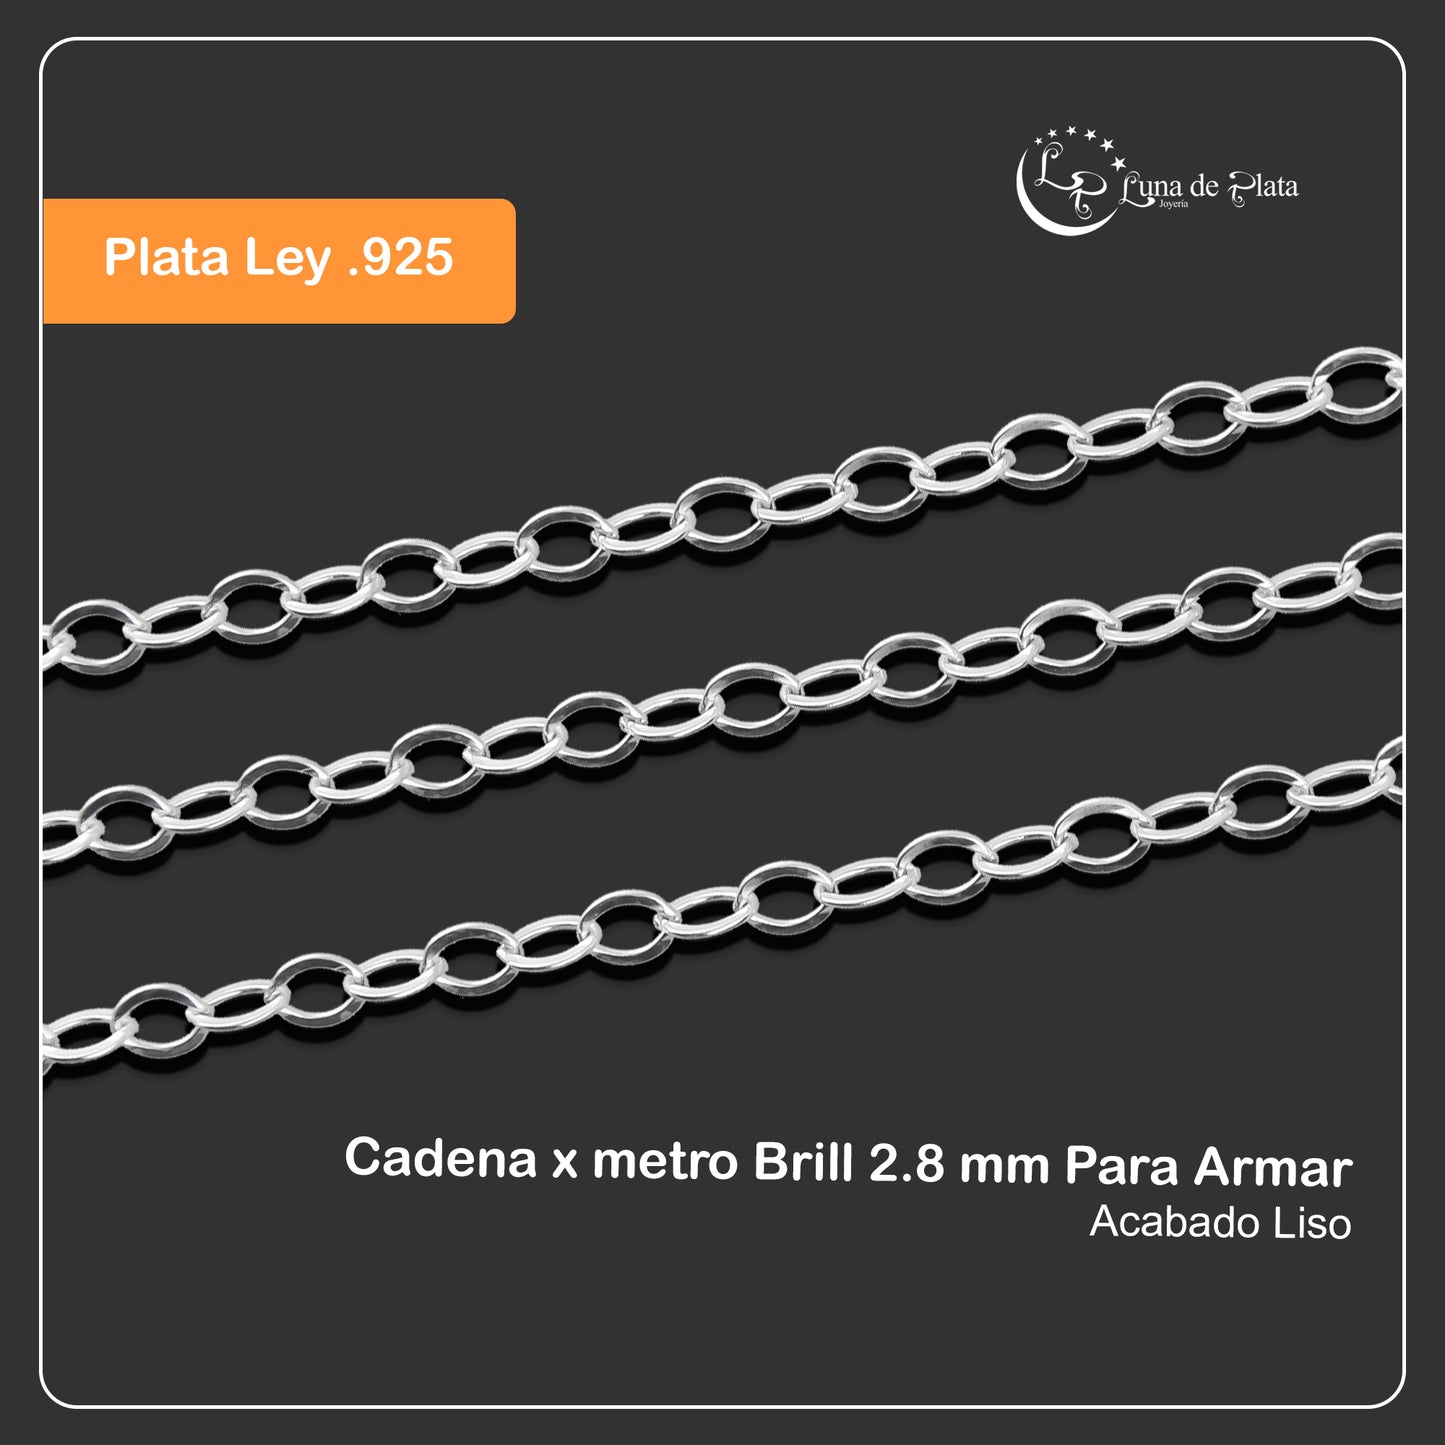 LPCAD003 Cadena x metro Brill 2.8 mm Para Armar Plata .925 2036289261